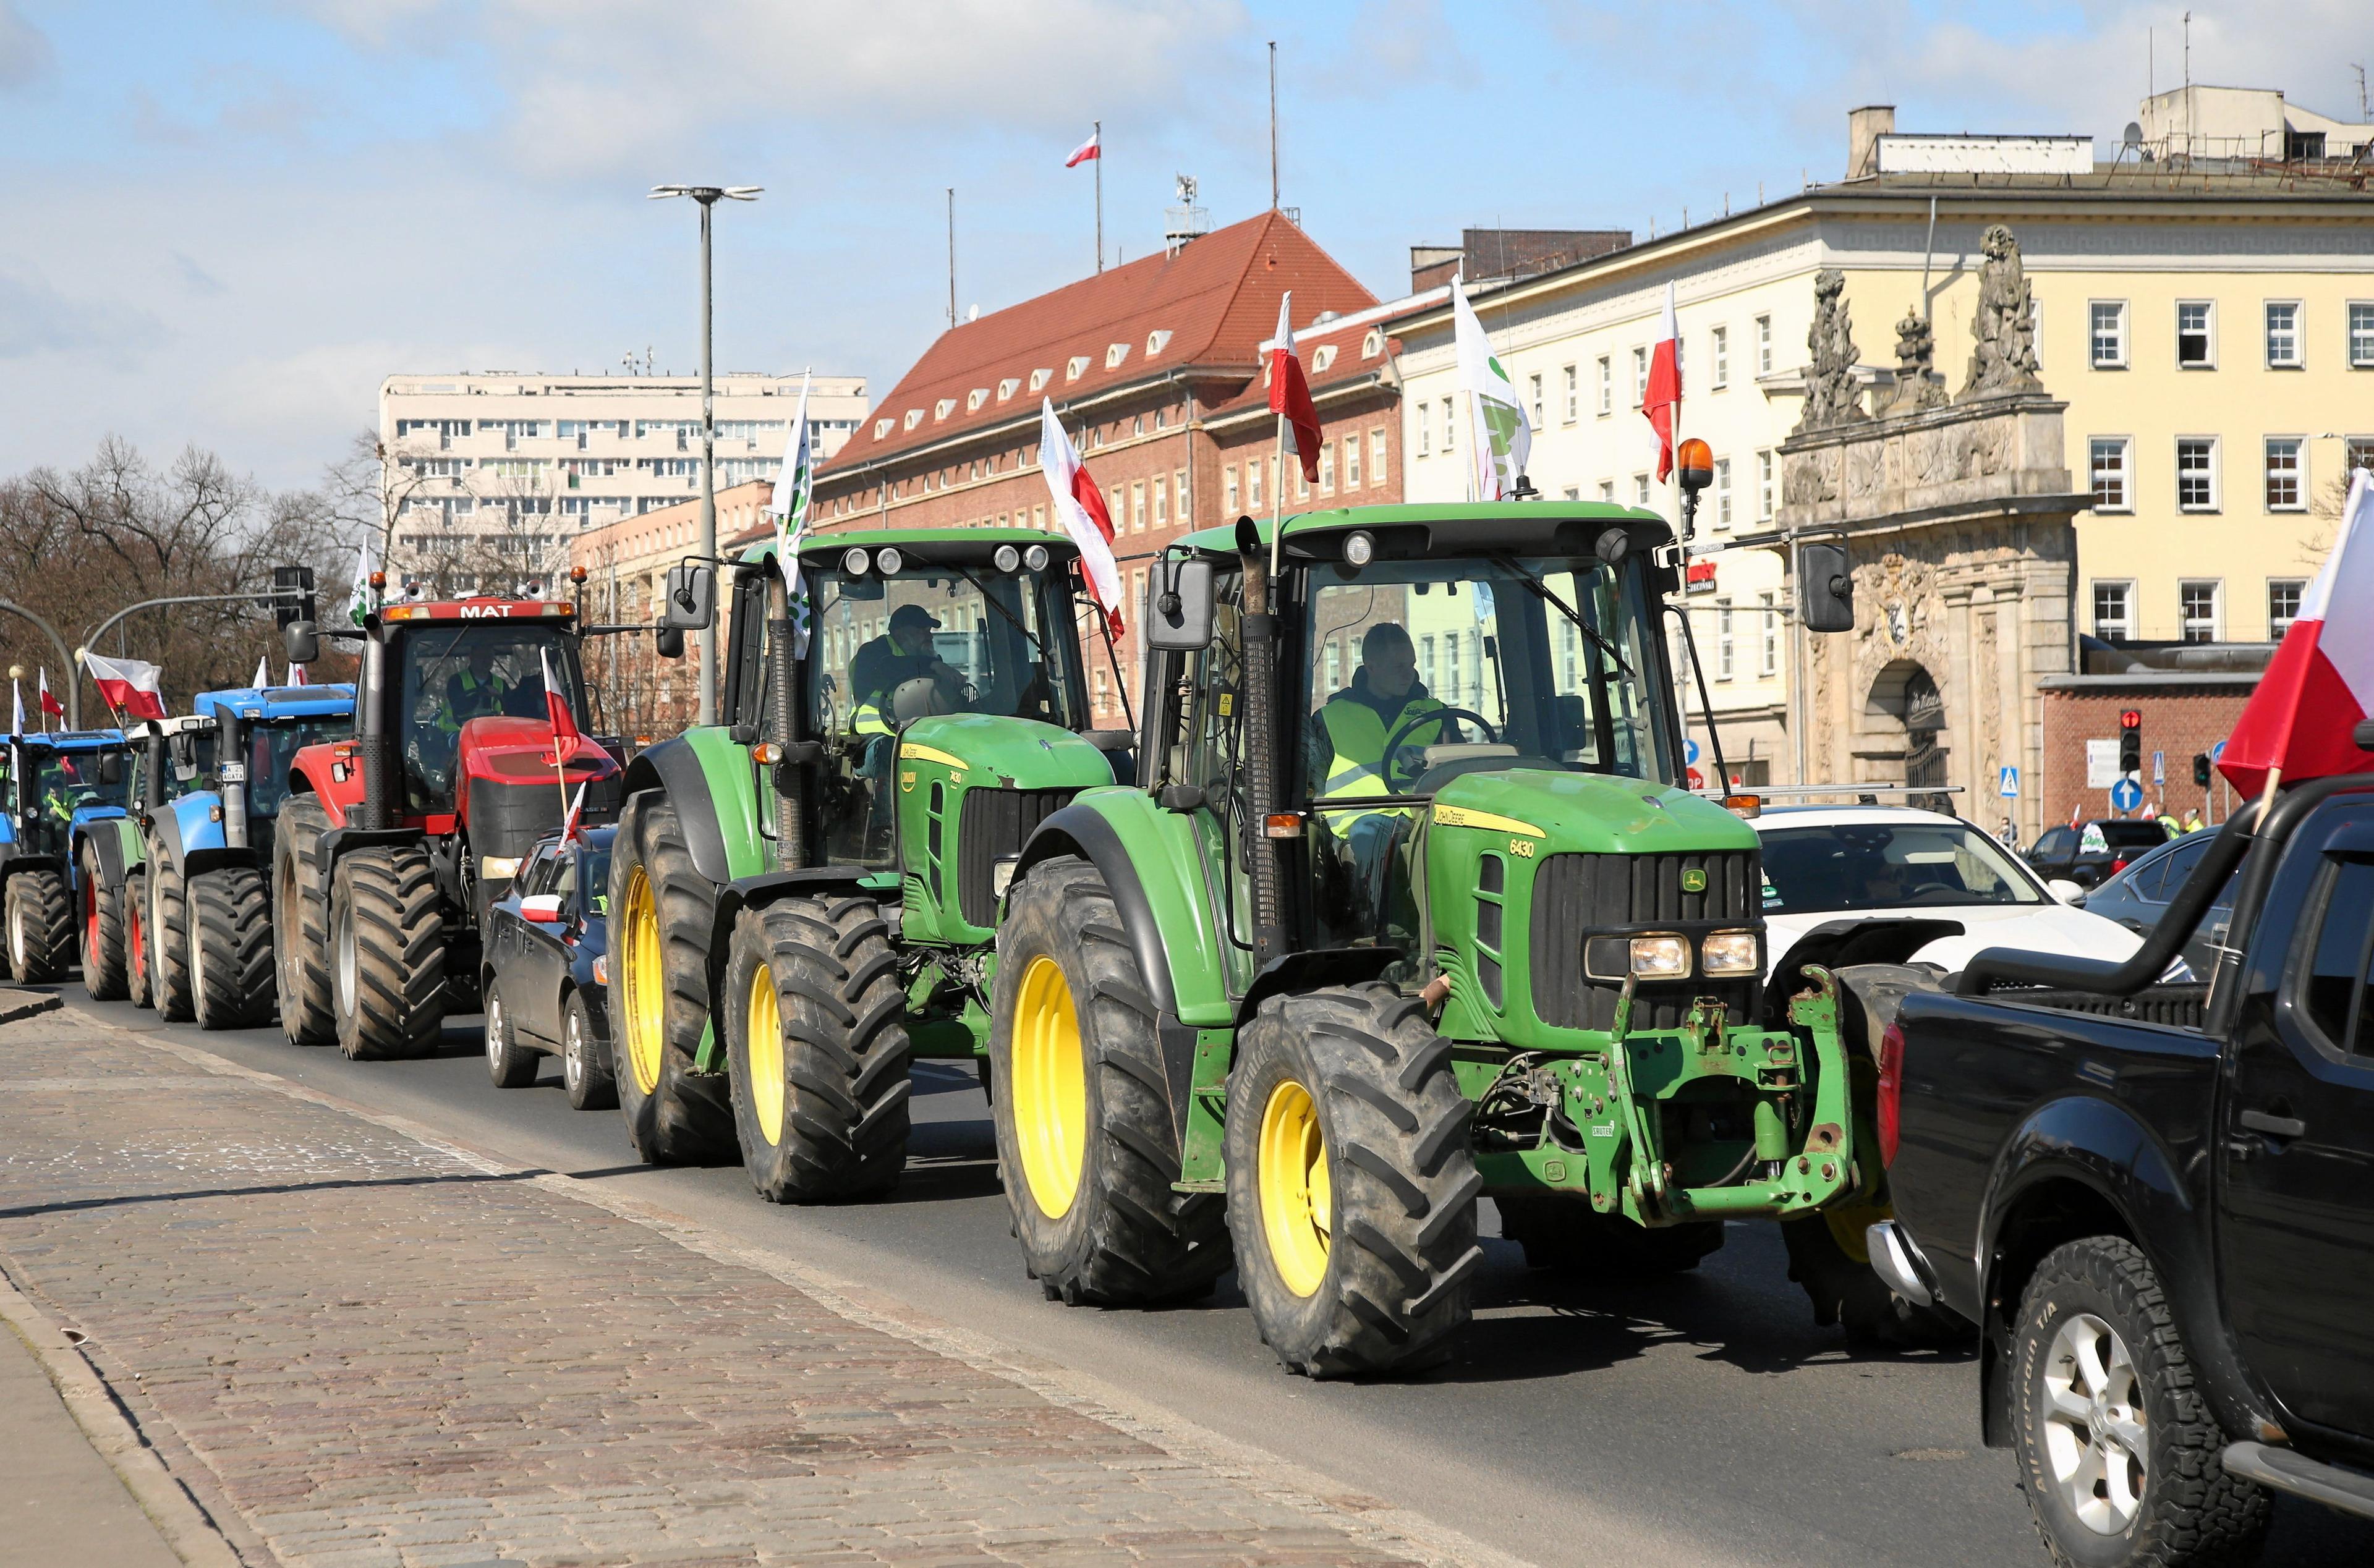 Ciągniki rolnicze blokują ulicę w Szczecinie. Protest rolników. Zakaz importu zboża.